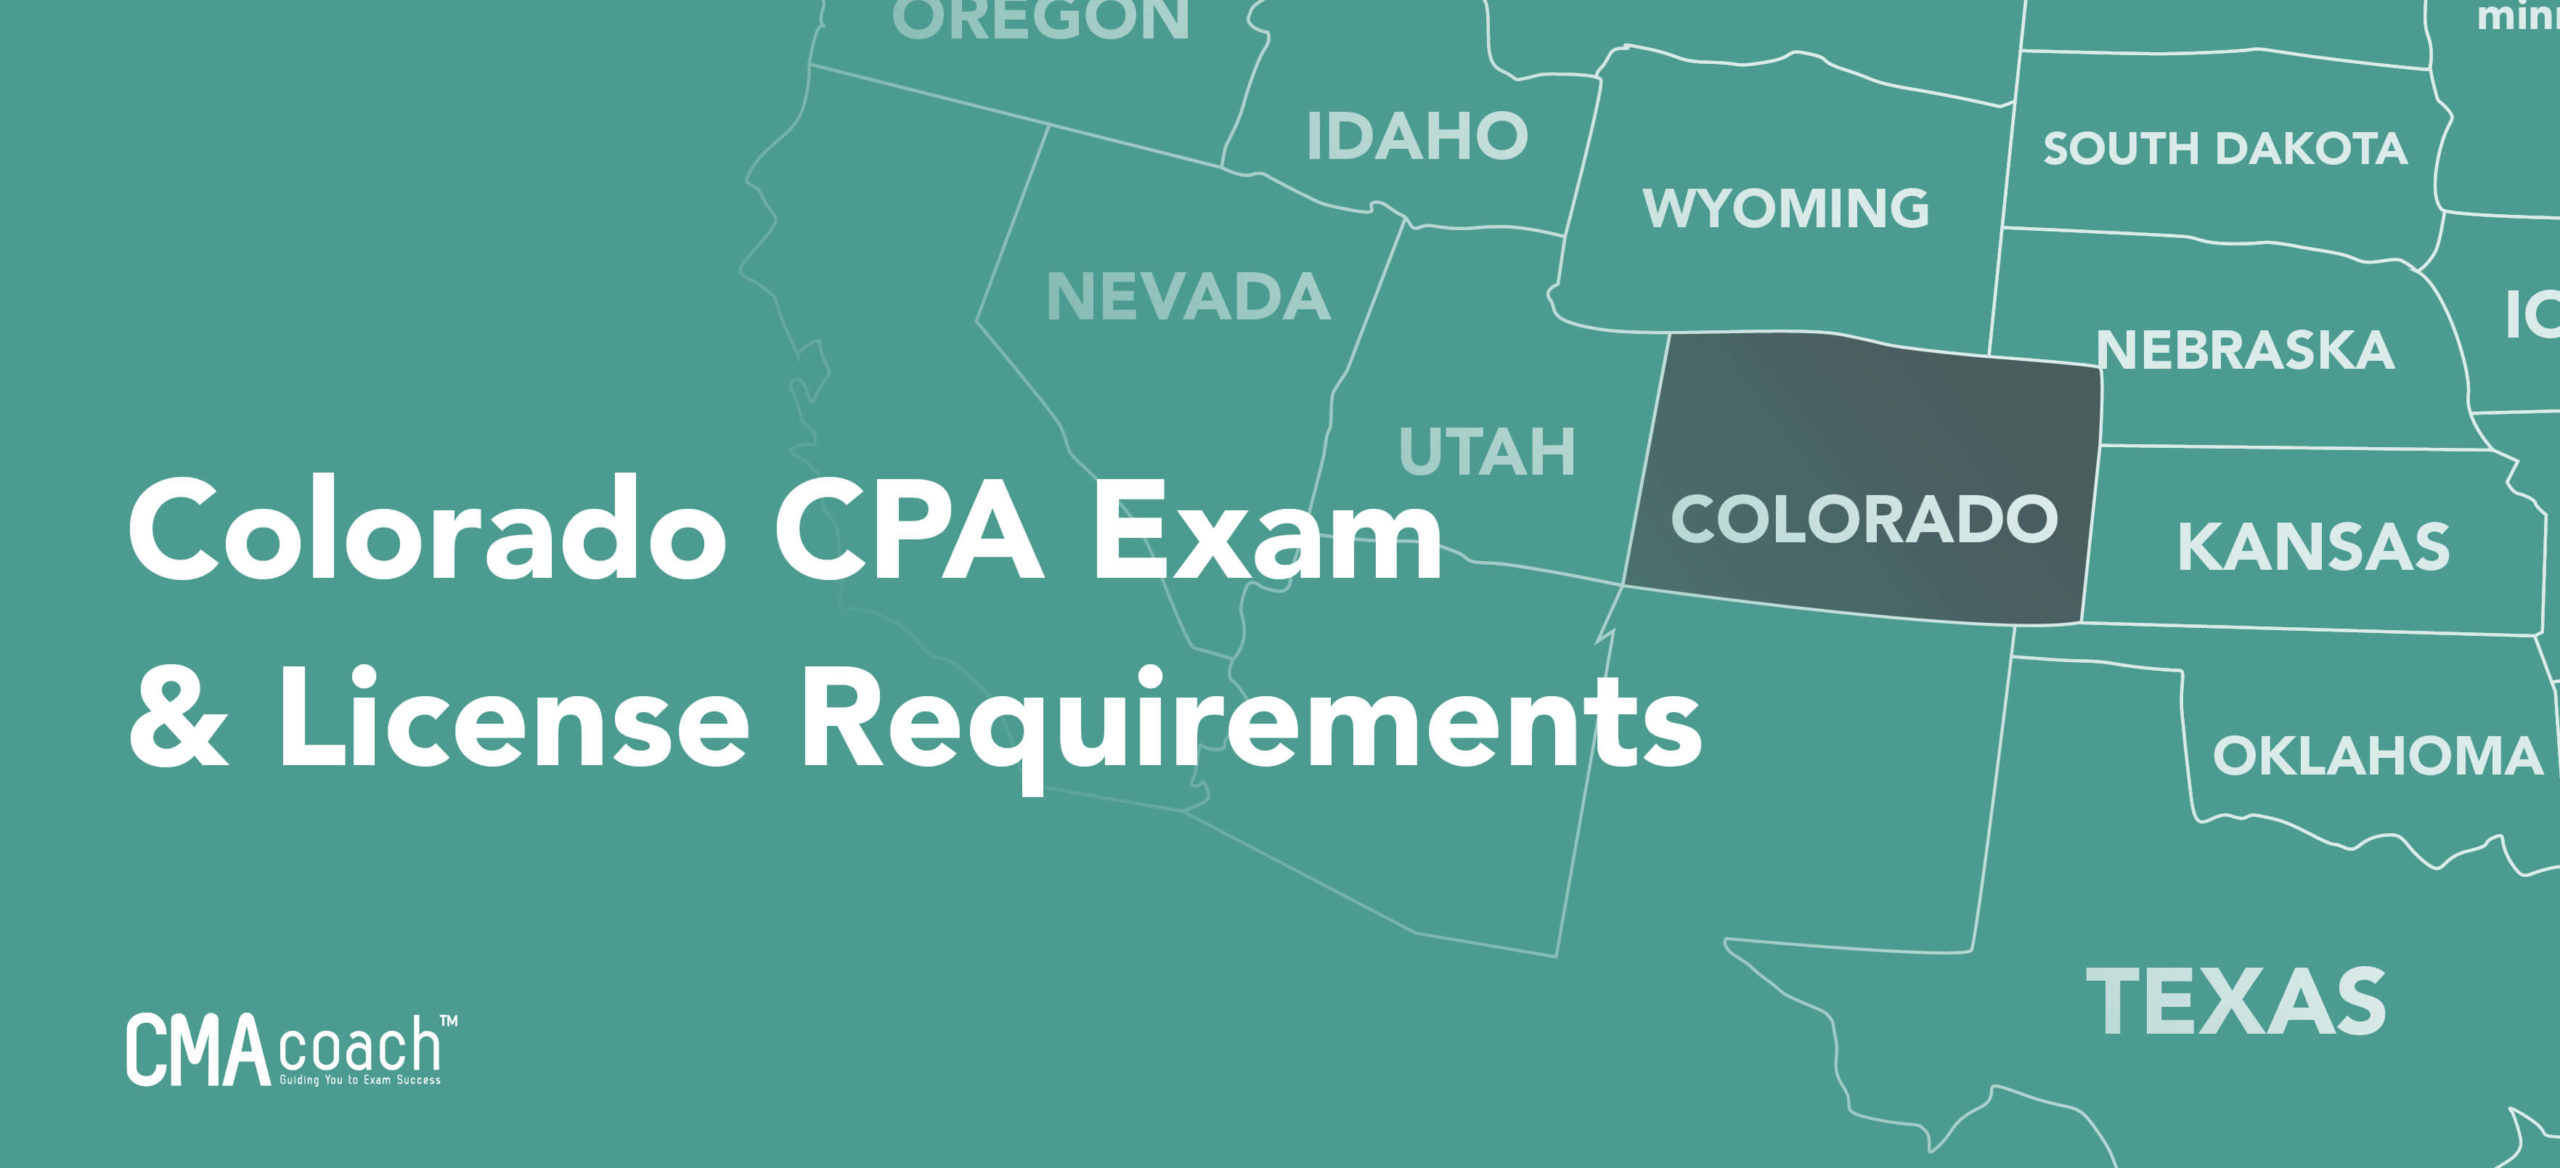 Colorado CPA Requirements in 2021 (Licensing & Exam) CMA Coach